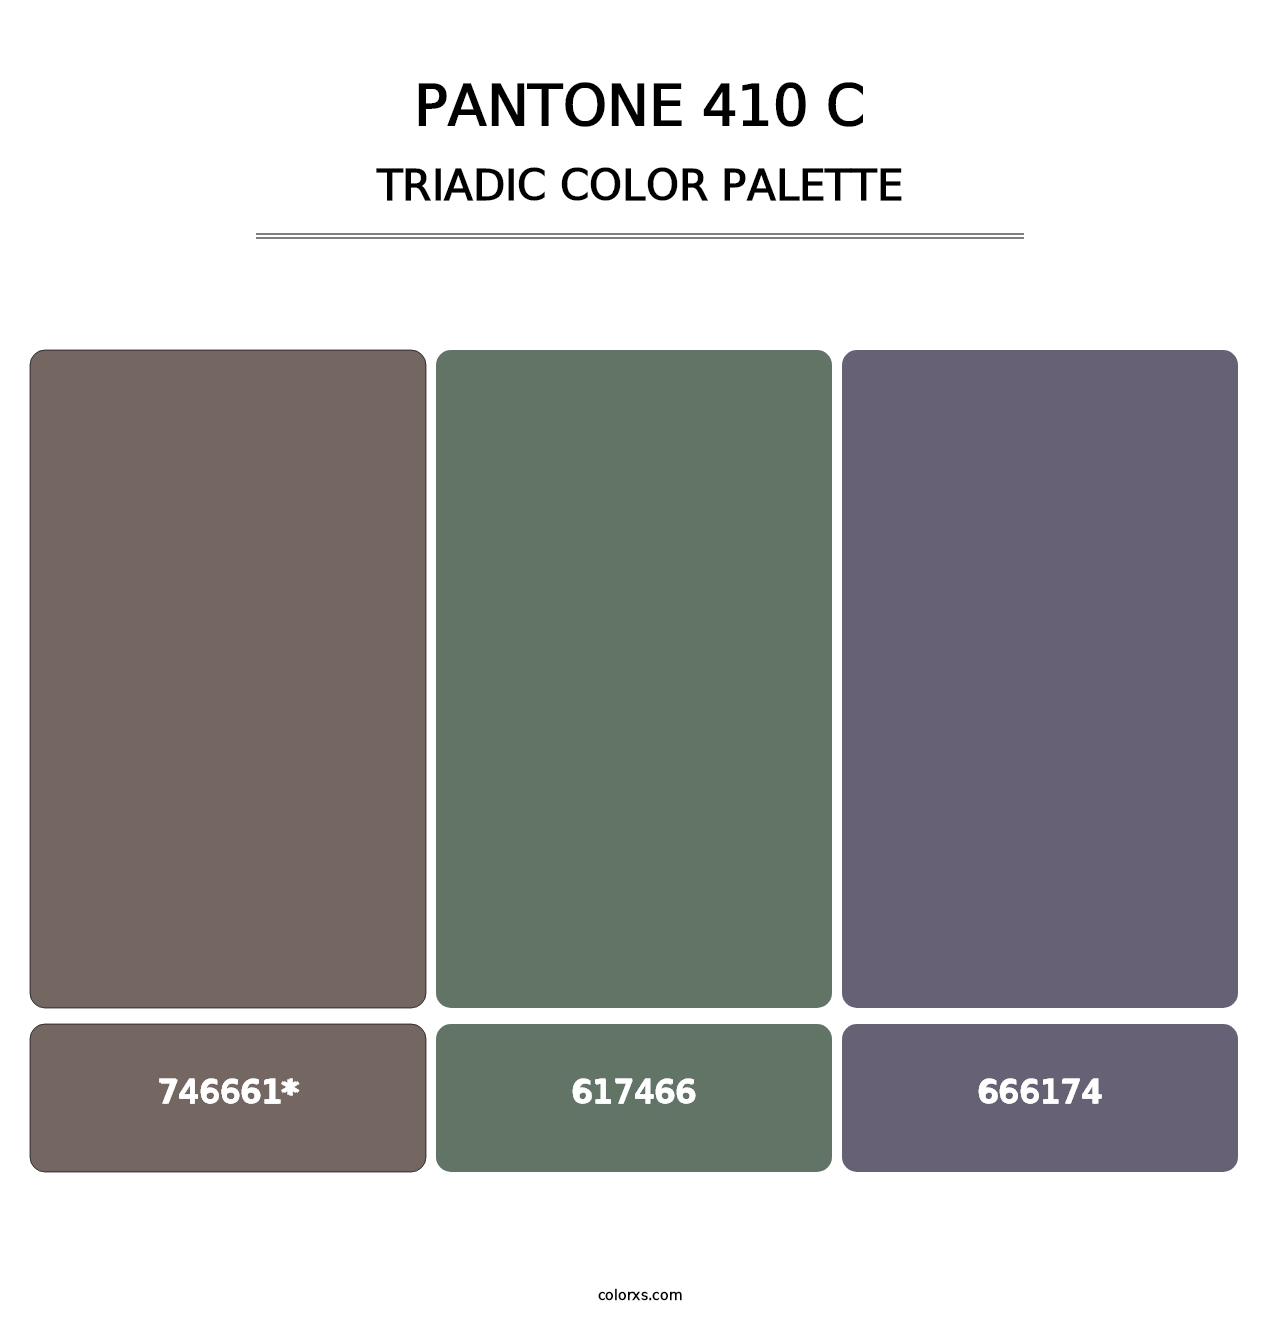 PANTONE 410 C - Triadic Color Palette